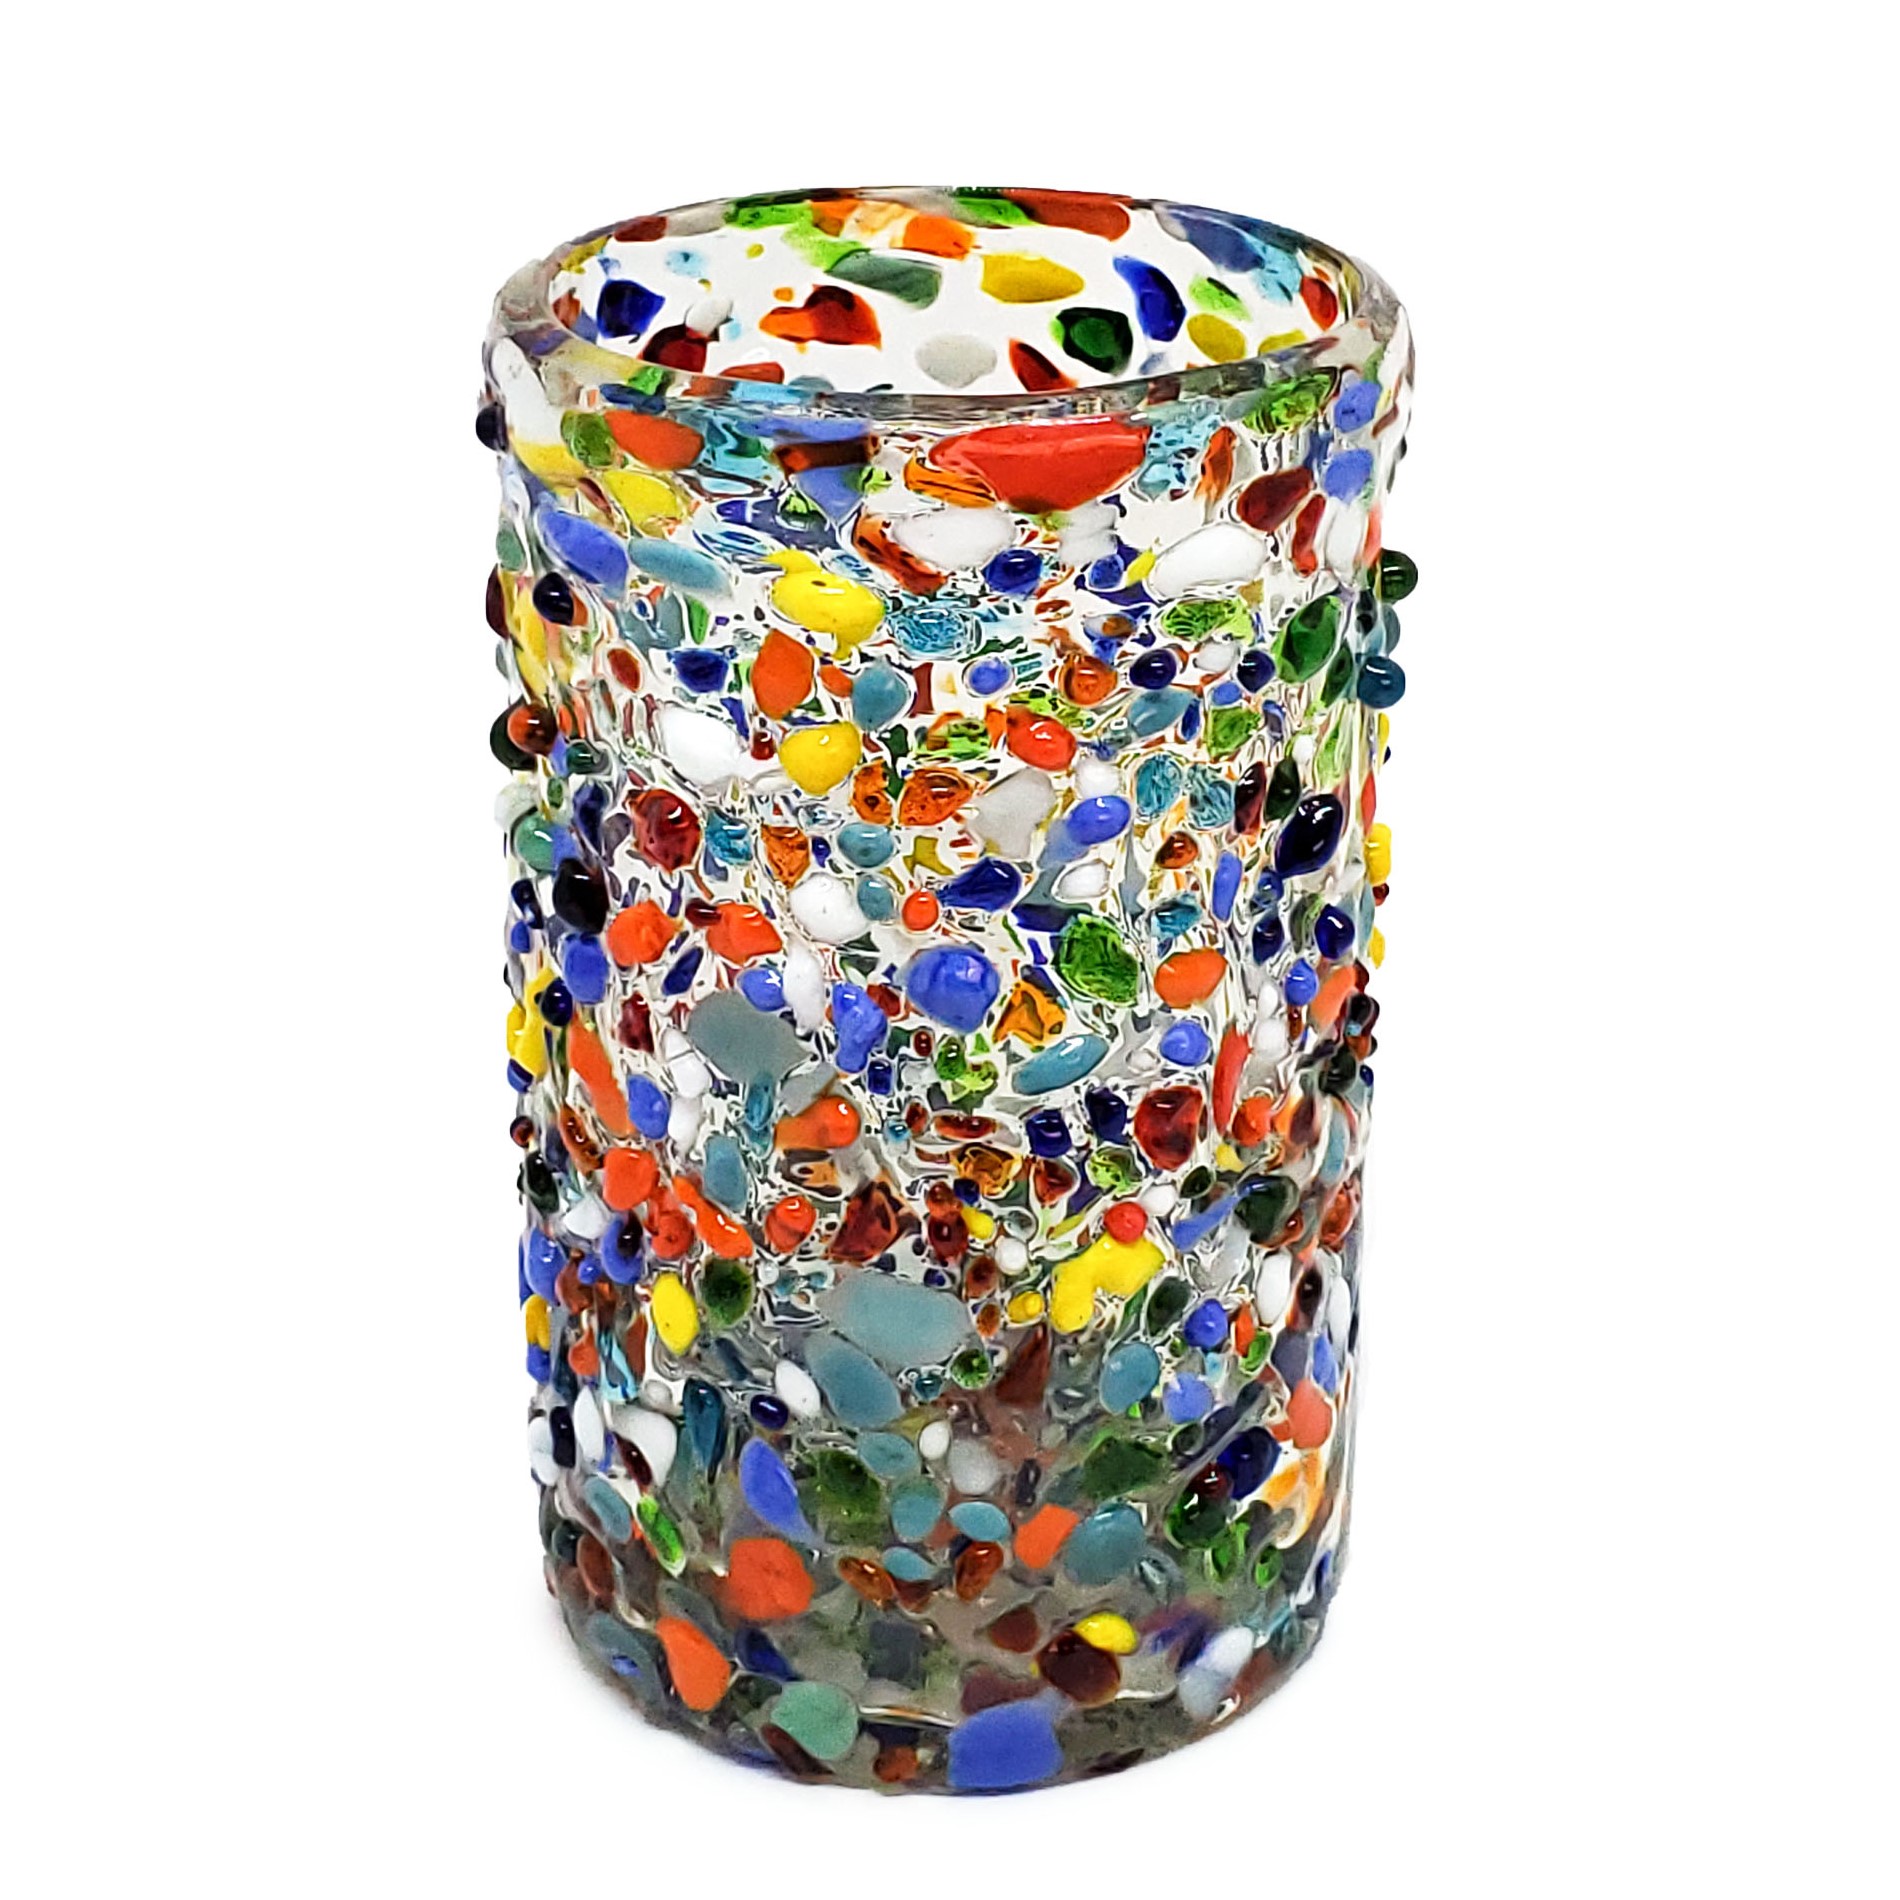 VIDRIO SOPLADO / vasos grandes 'Confeti granizado', 14 oz, Vidrio Reciclado, Libre de Plomo y Toxinas